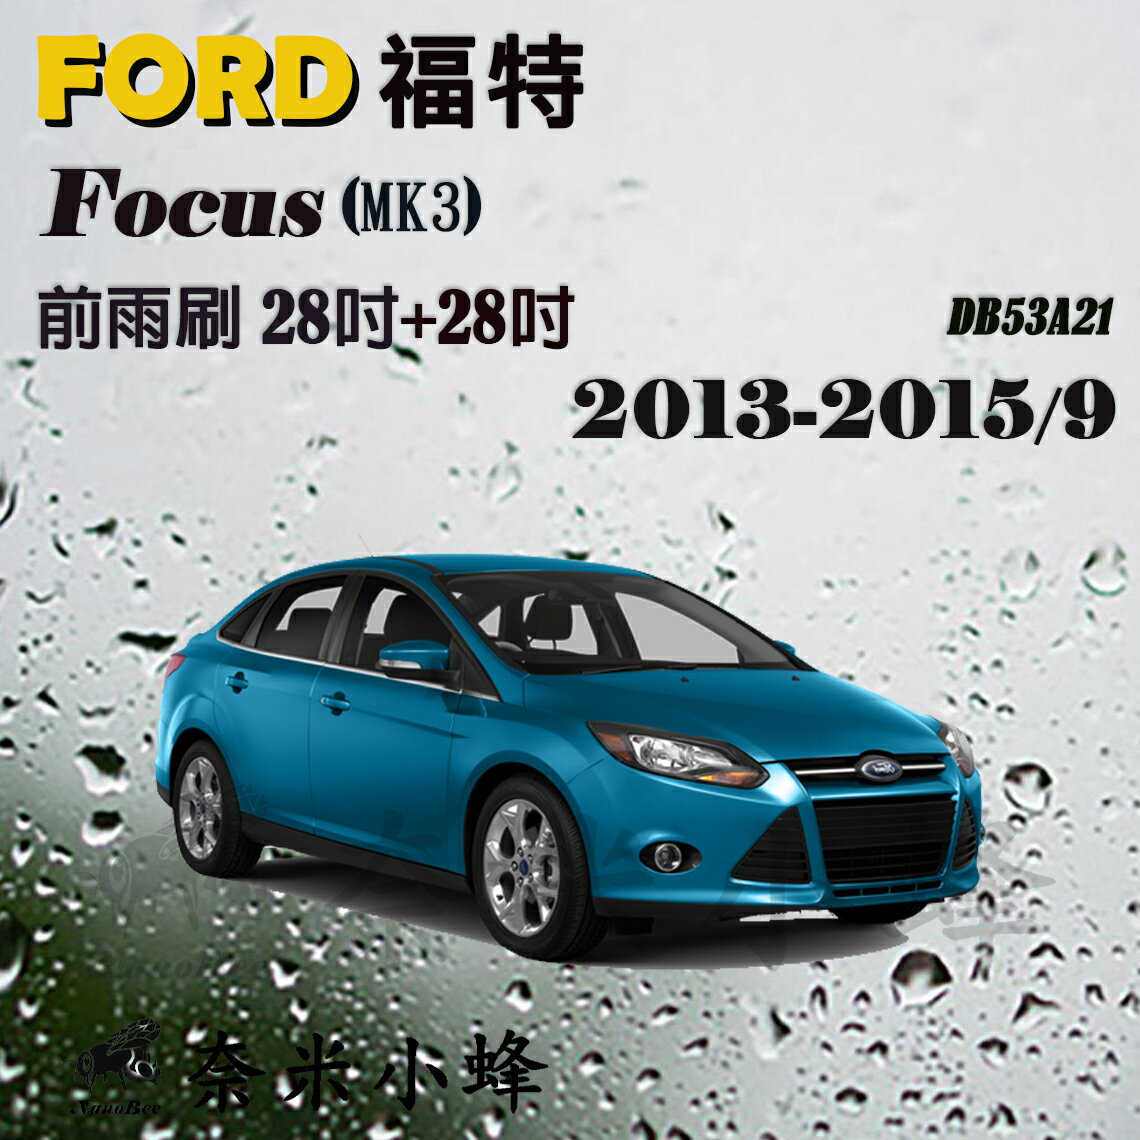 【奈米小蜂】FORD福特FOCUS 2013-2015/9(MK3)雨刷 FOCUS後雨刷 矽膠雨刷 矽膠鍍膜 軟骨雨刷